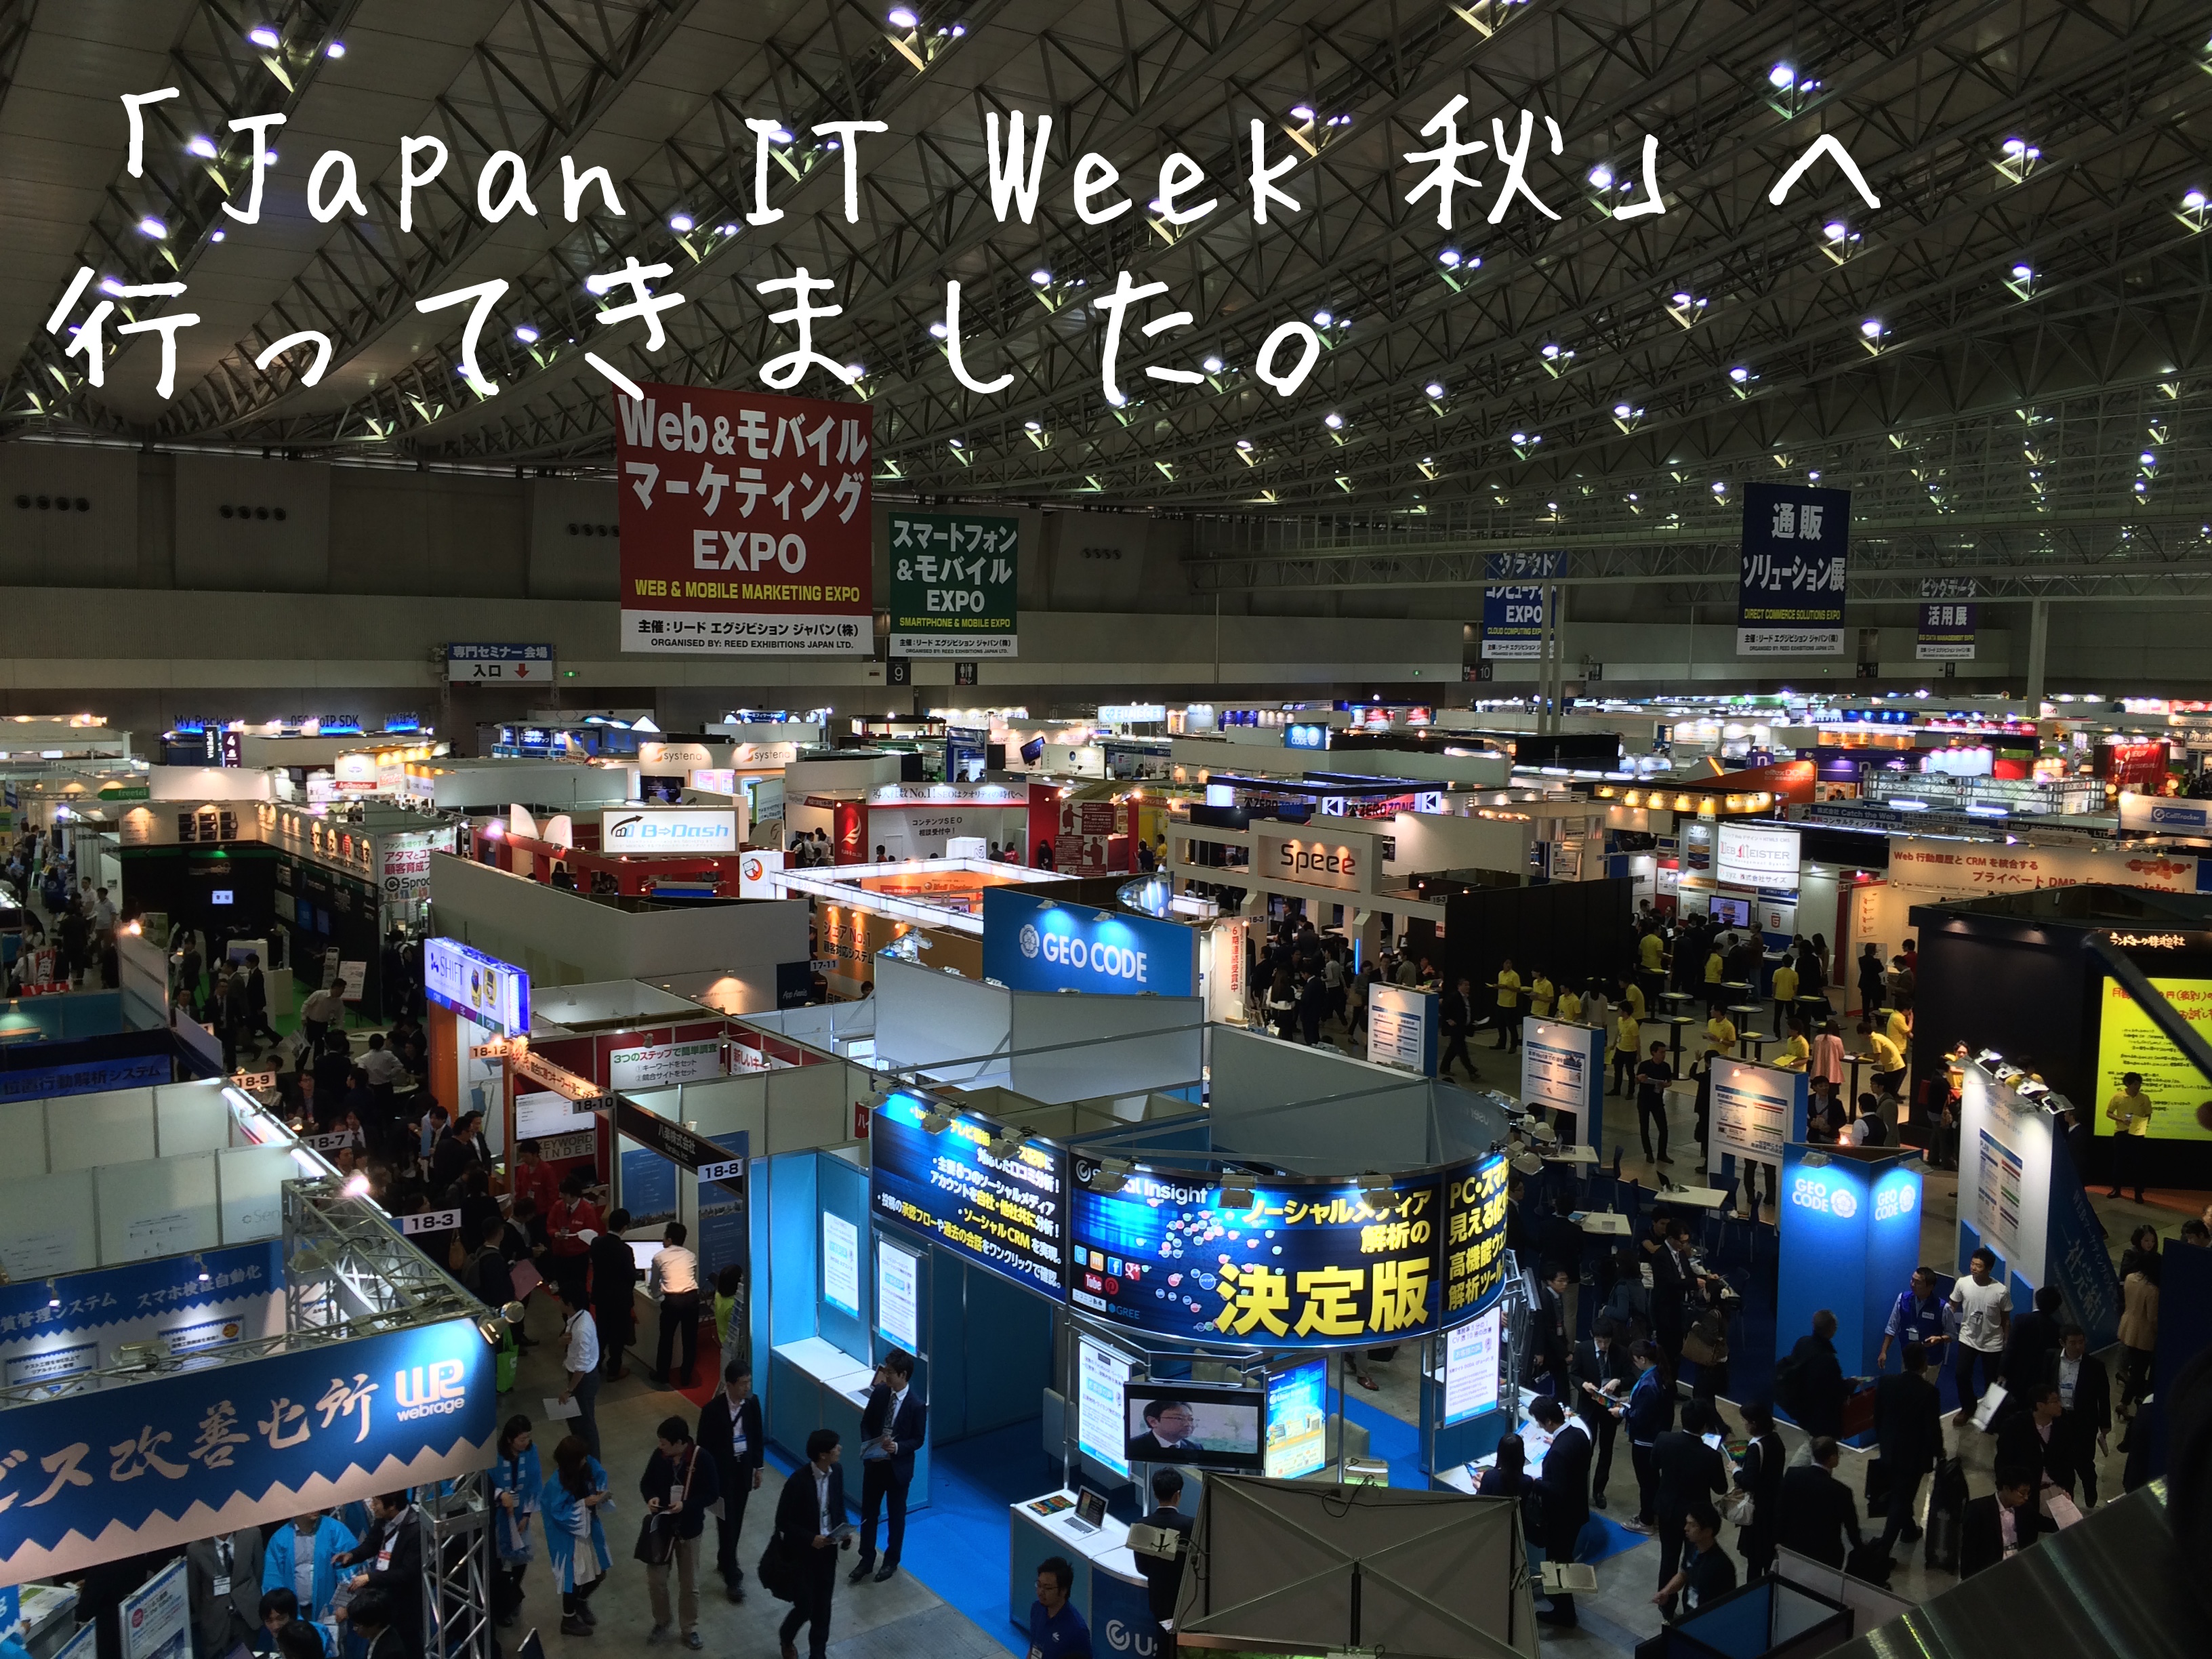 Japan IT Week 秋（幕張）へ行ってきました。